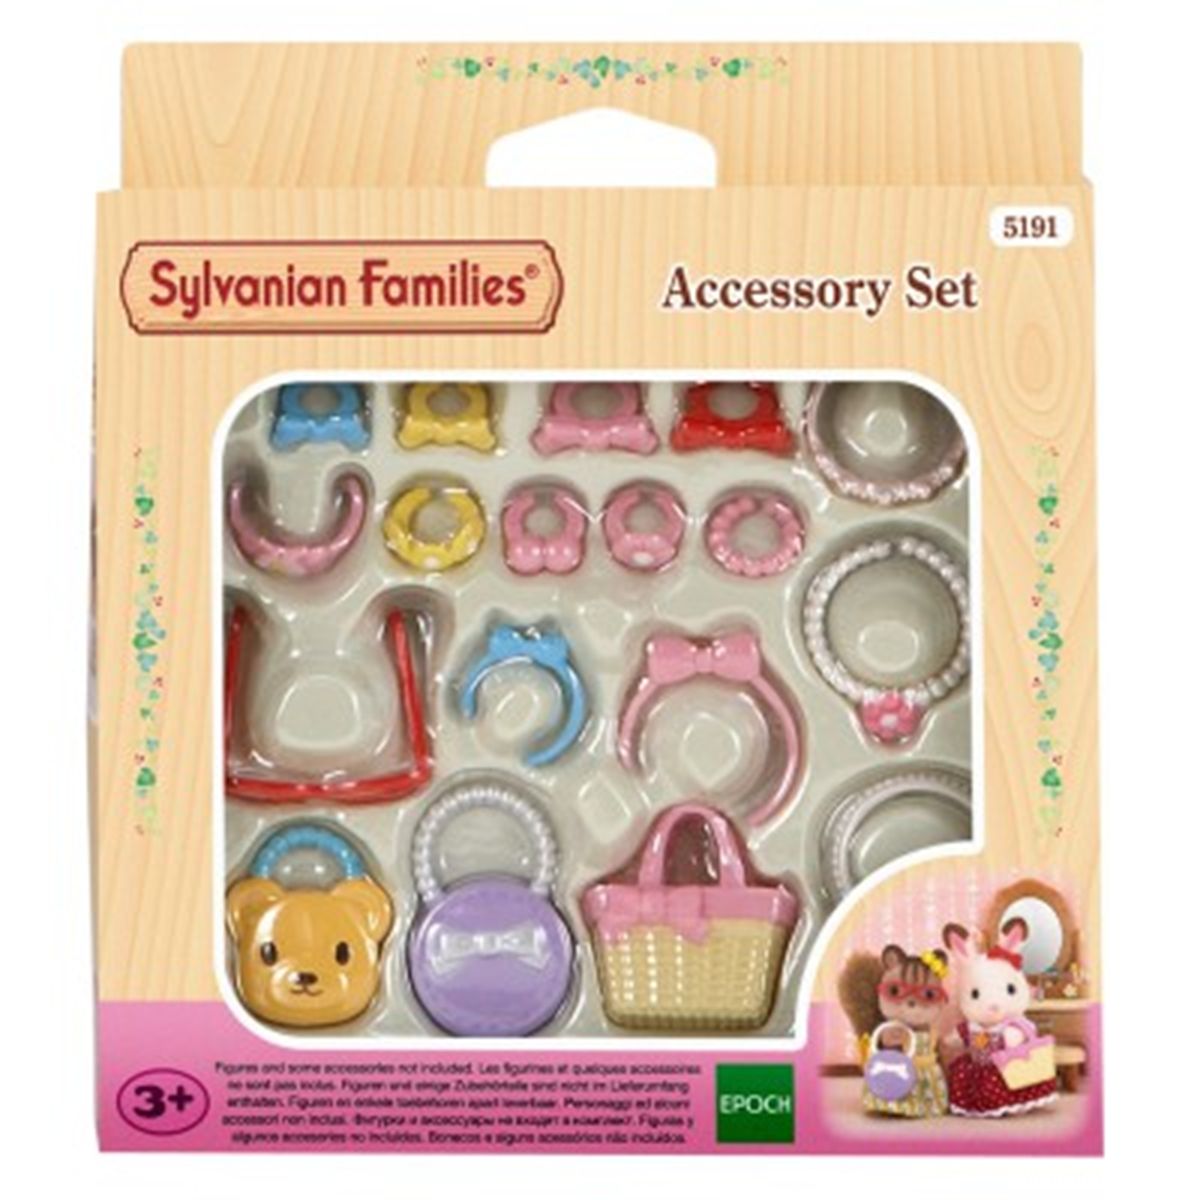 Accessoires pour poupées Sylvanian Families 5449 - DIAYTAR SÉNÉGAL